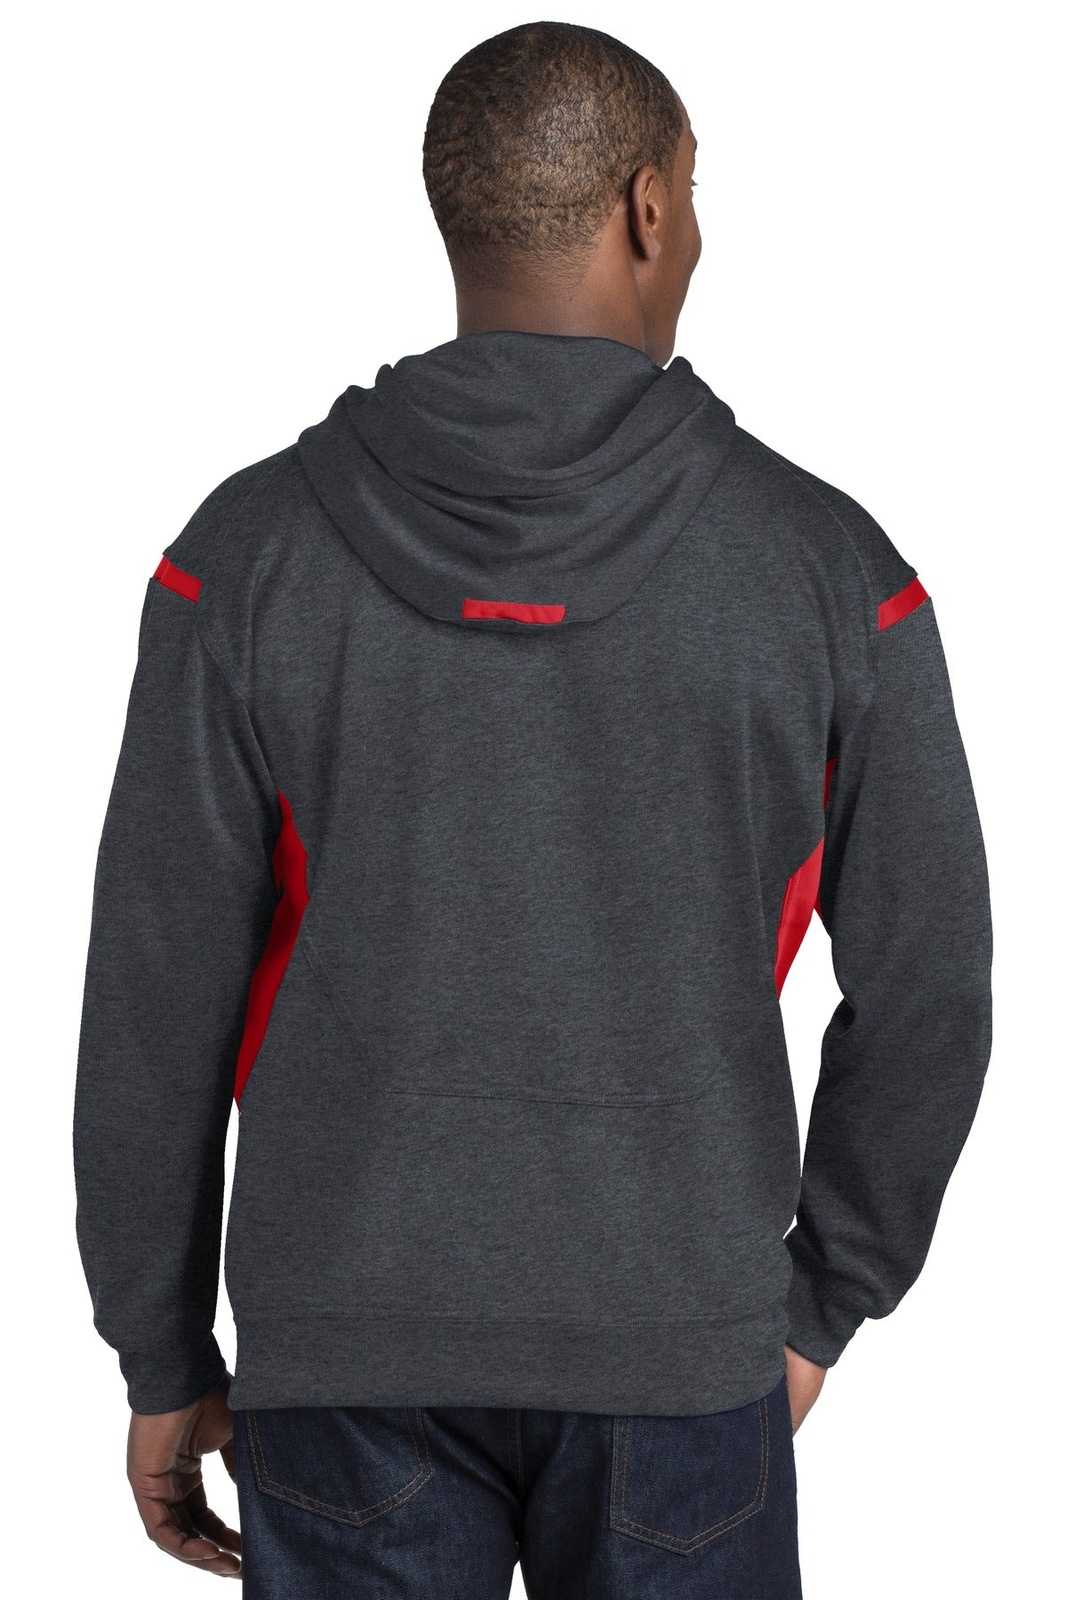 Sport-Tek F246 Tech Fleece Colorblock Hooded Sweatshirt - Graphite Heather True Red - HIT a Double - 2